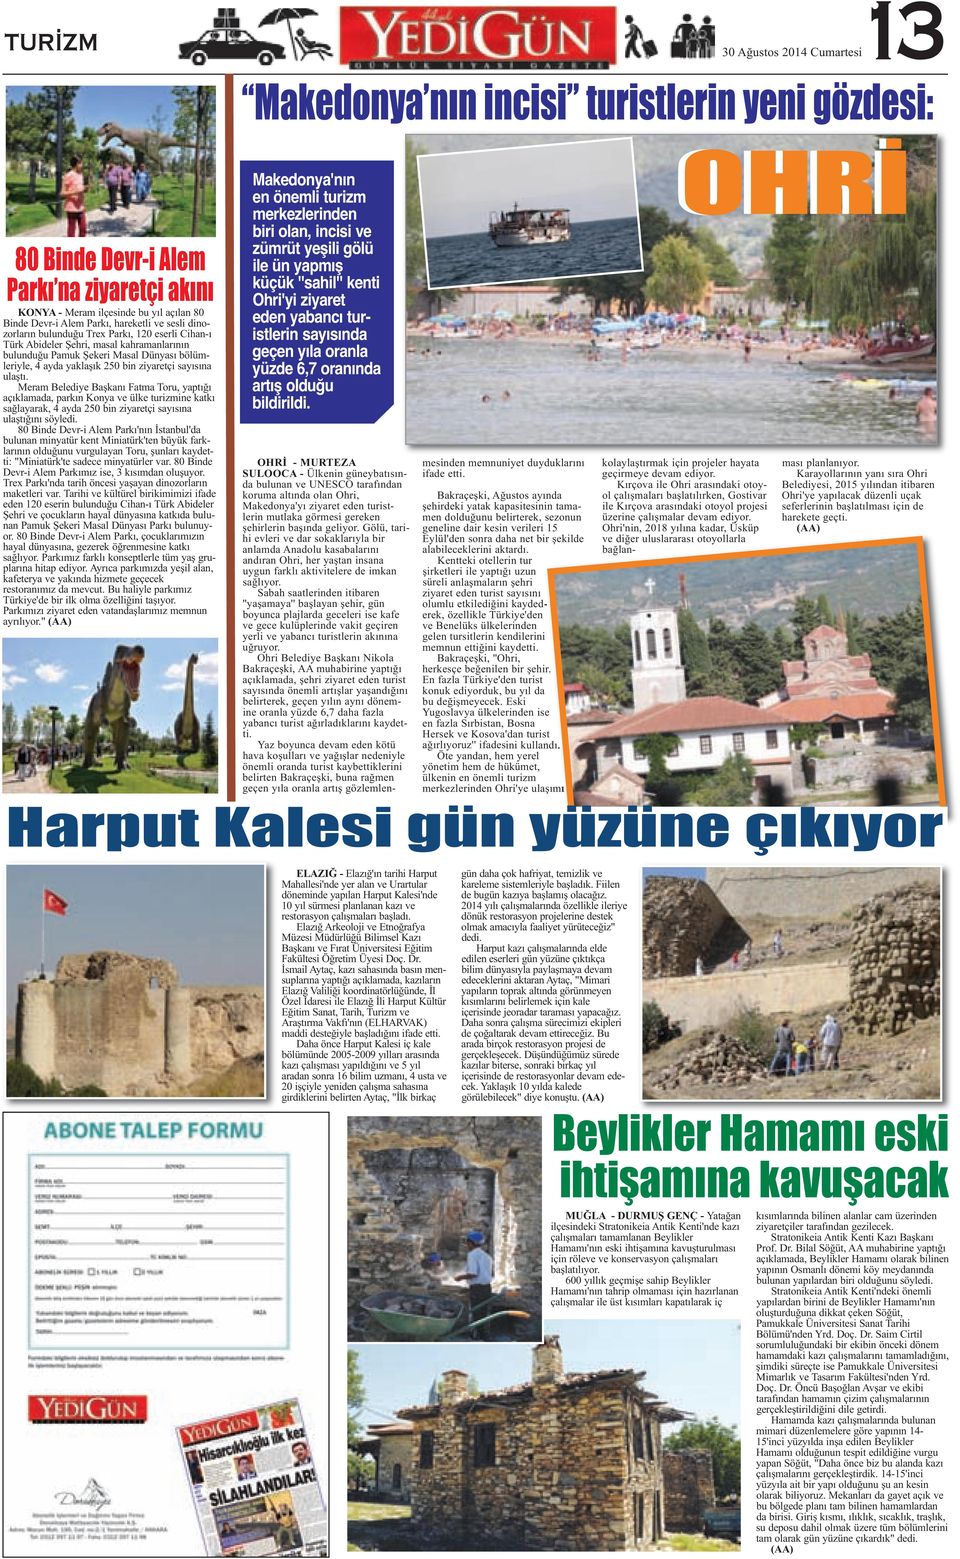 ziyaretçi sayısına ulaştı. Meram Belediye Başkanı Fatma Toru, yaptığı açıklamada, parkın Konya ve ülke turizmine katkı sağlayarak, 4 ayda 250 bin ziyaretçi sayısına ulaştığını söyledi.